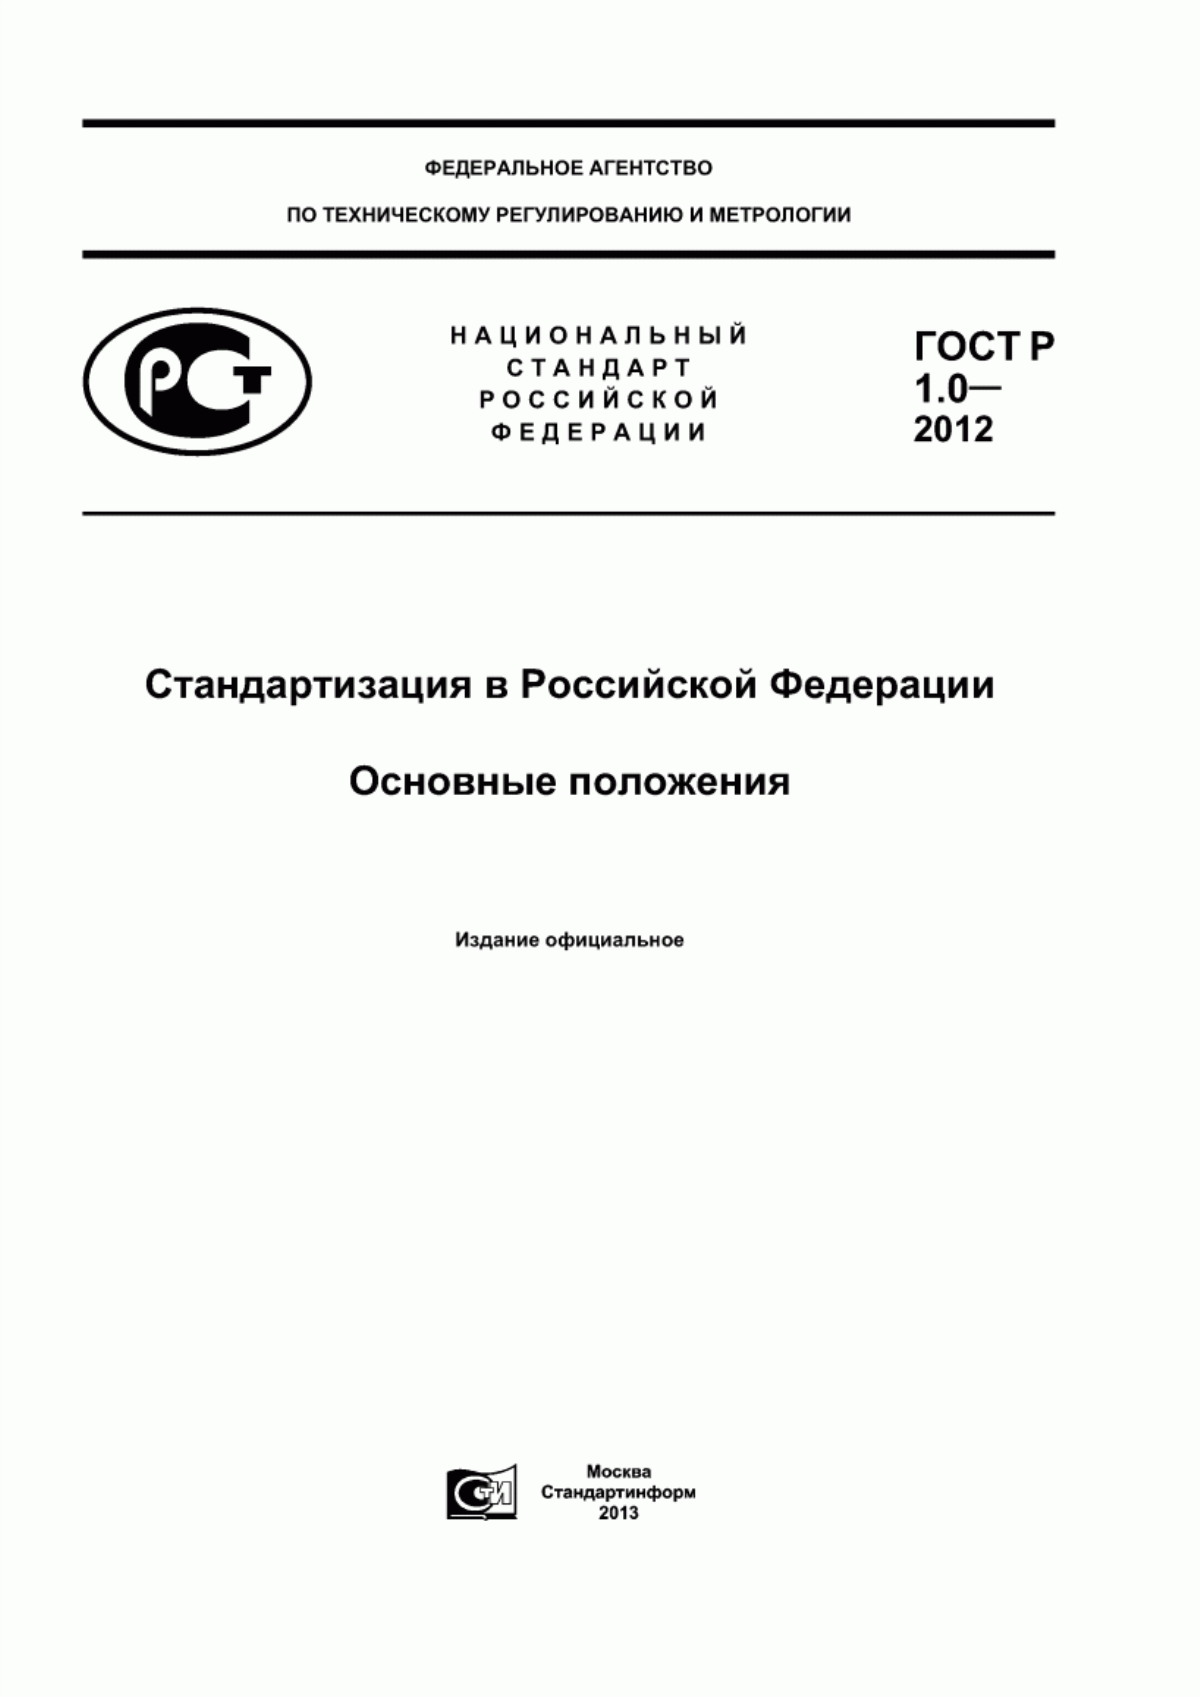 ГОСТ Р 1.0-2012 Стандартизация в Российской Федерации. Основные положения